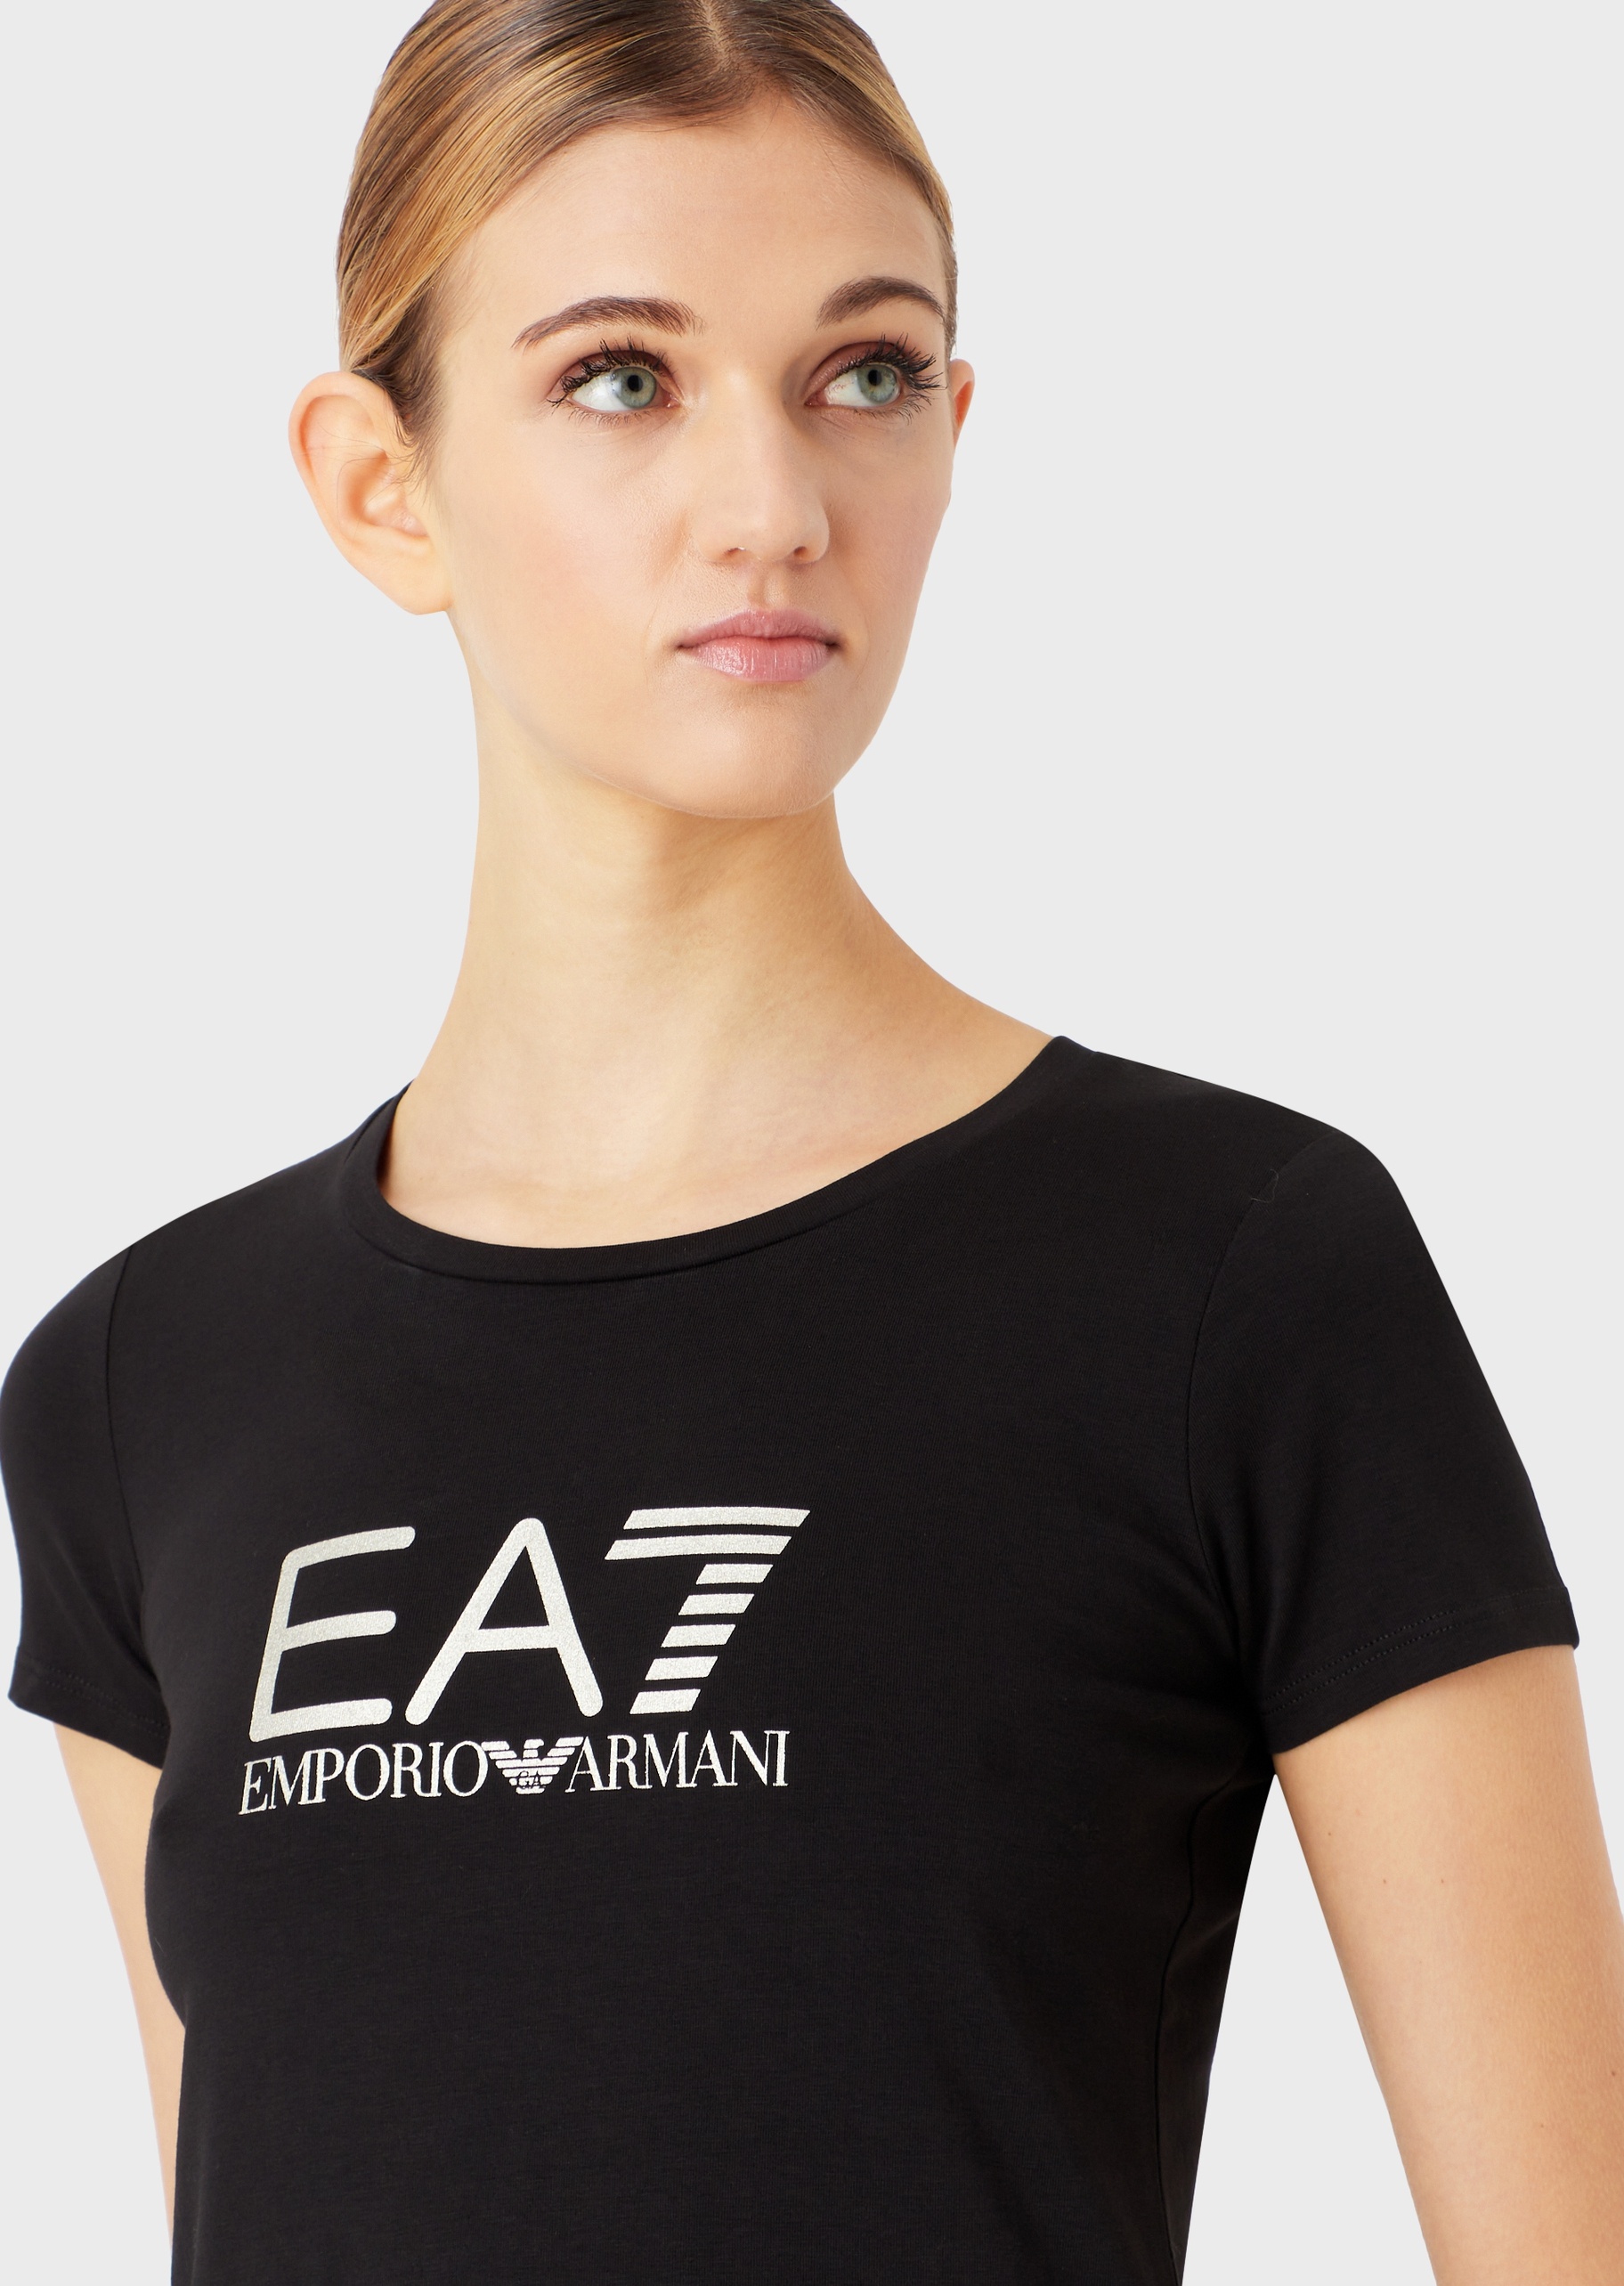 EA7 女士修身圆领短袖运动T恤